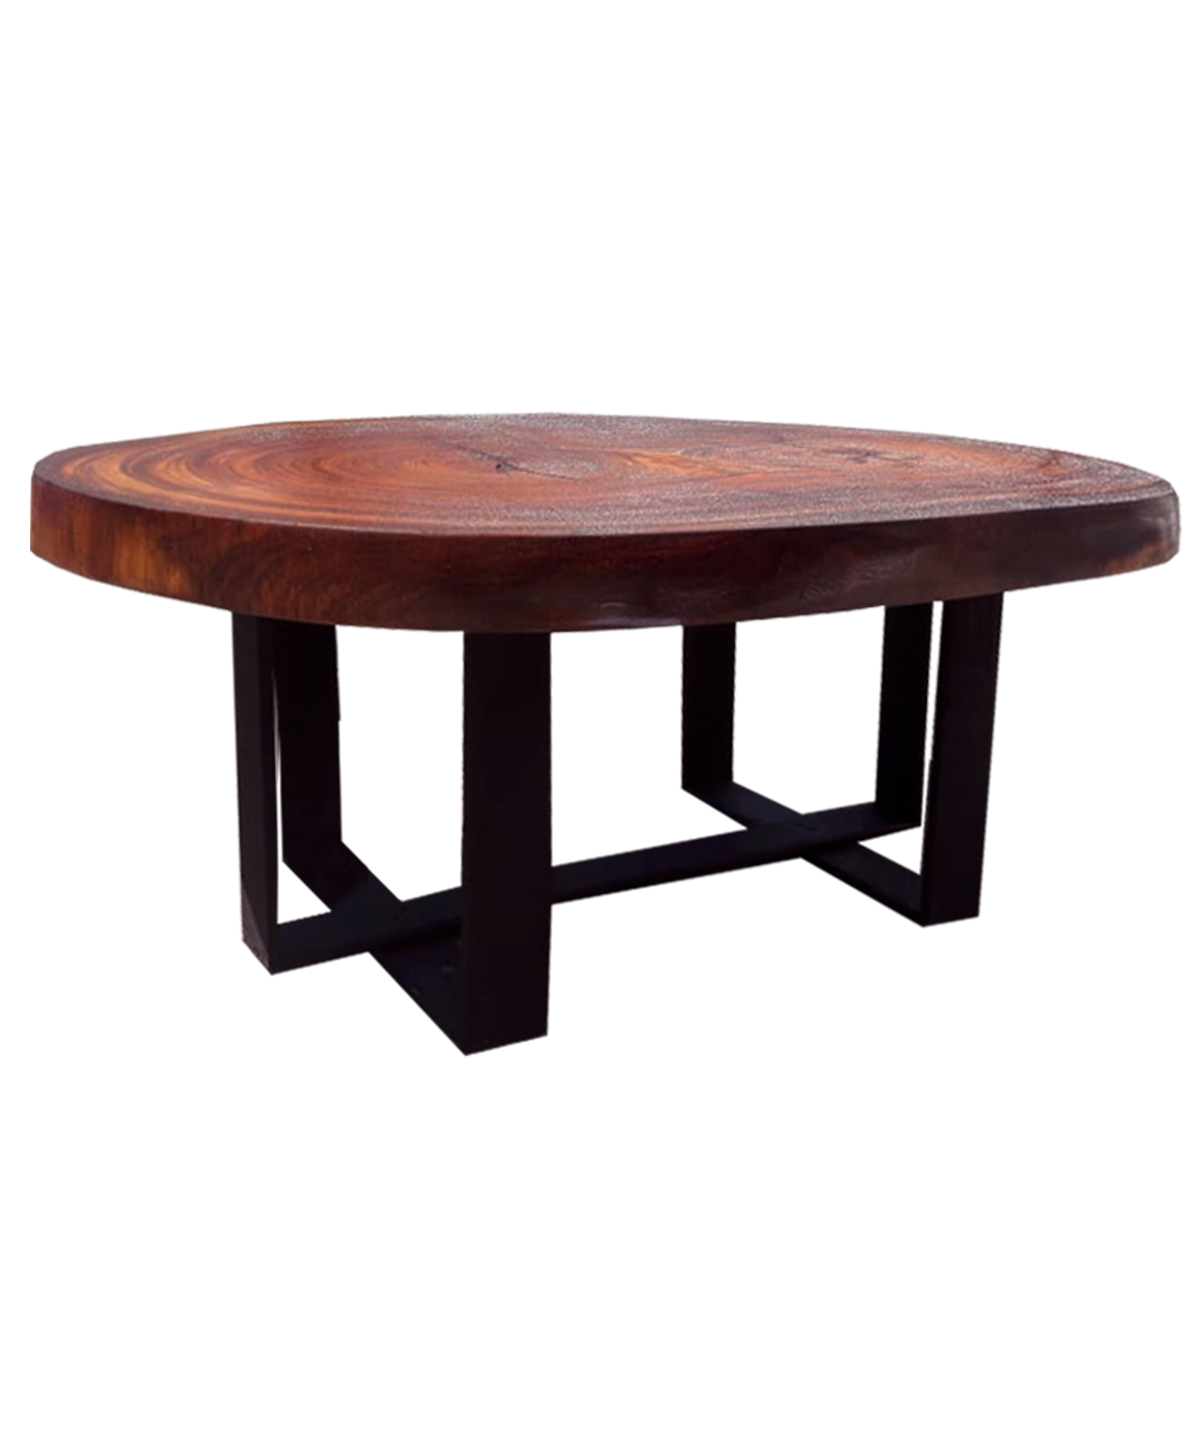  CMFTGDS Mesa de centro con patas de madera, mesa